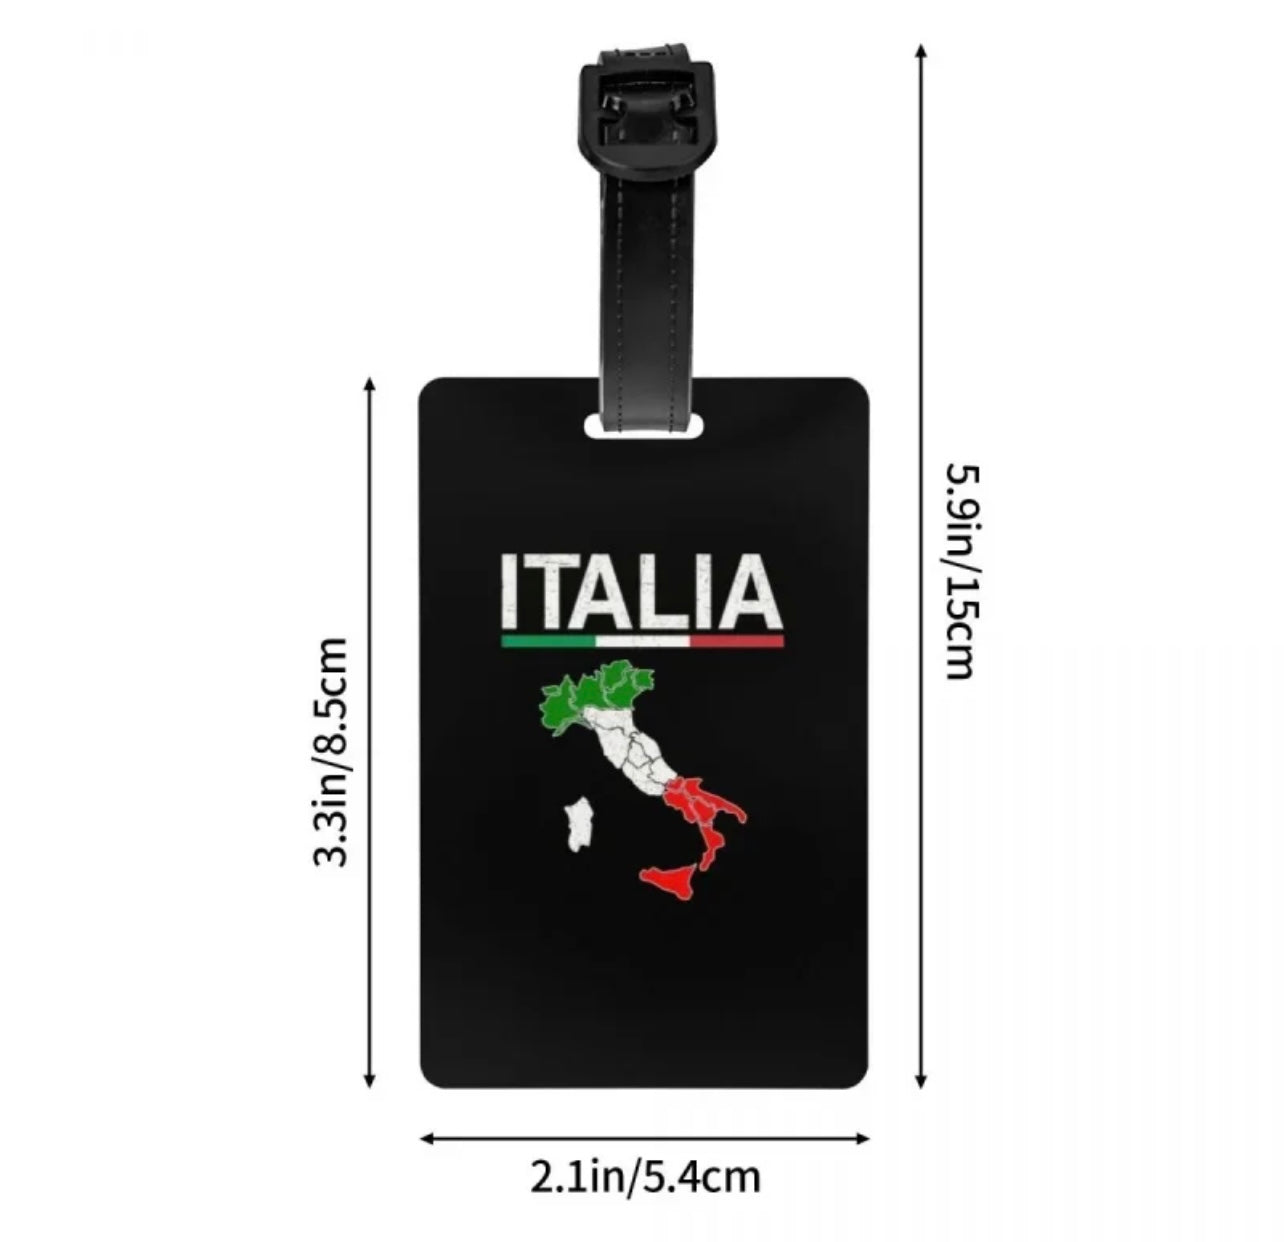 Italia Luggage Tag.